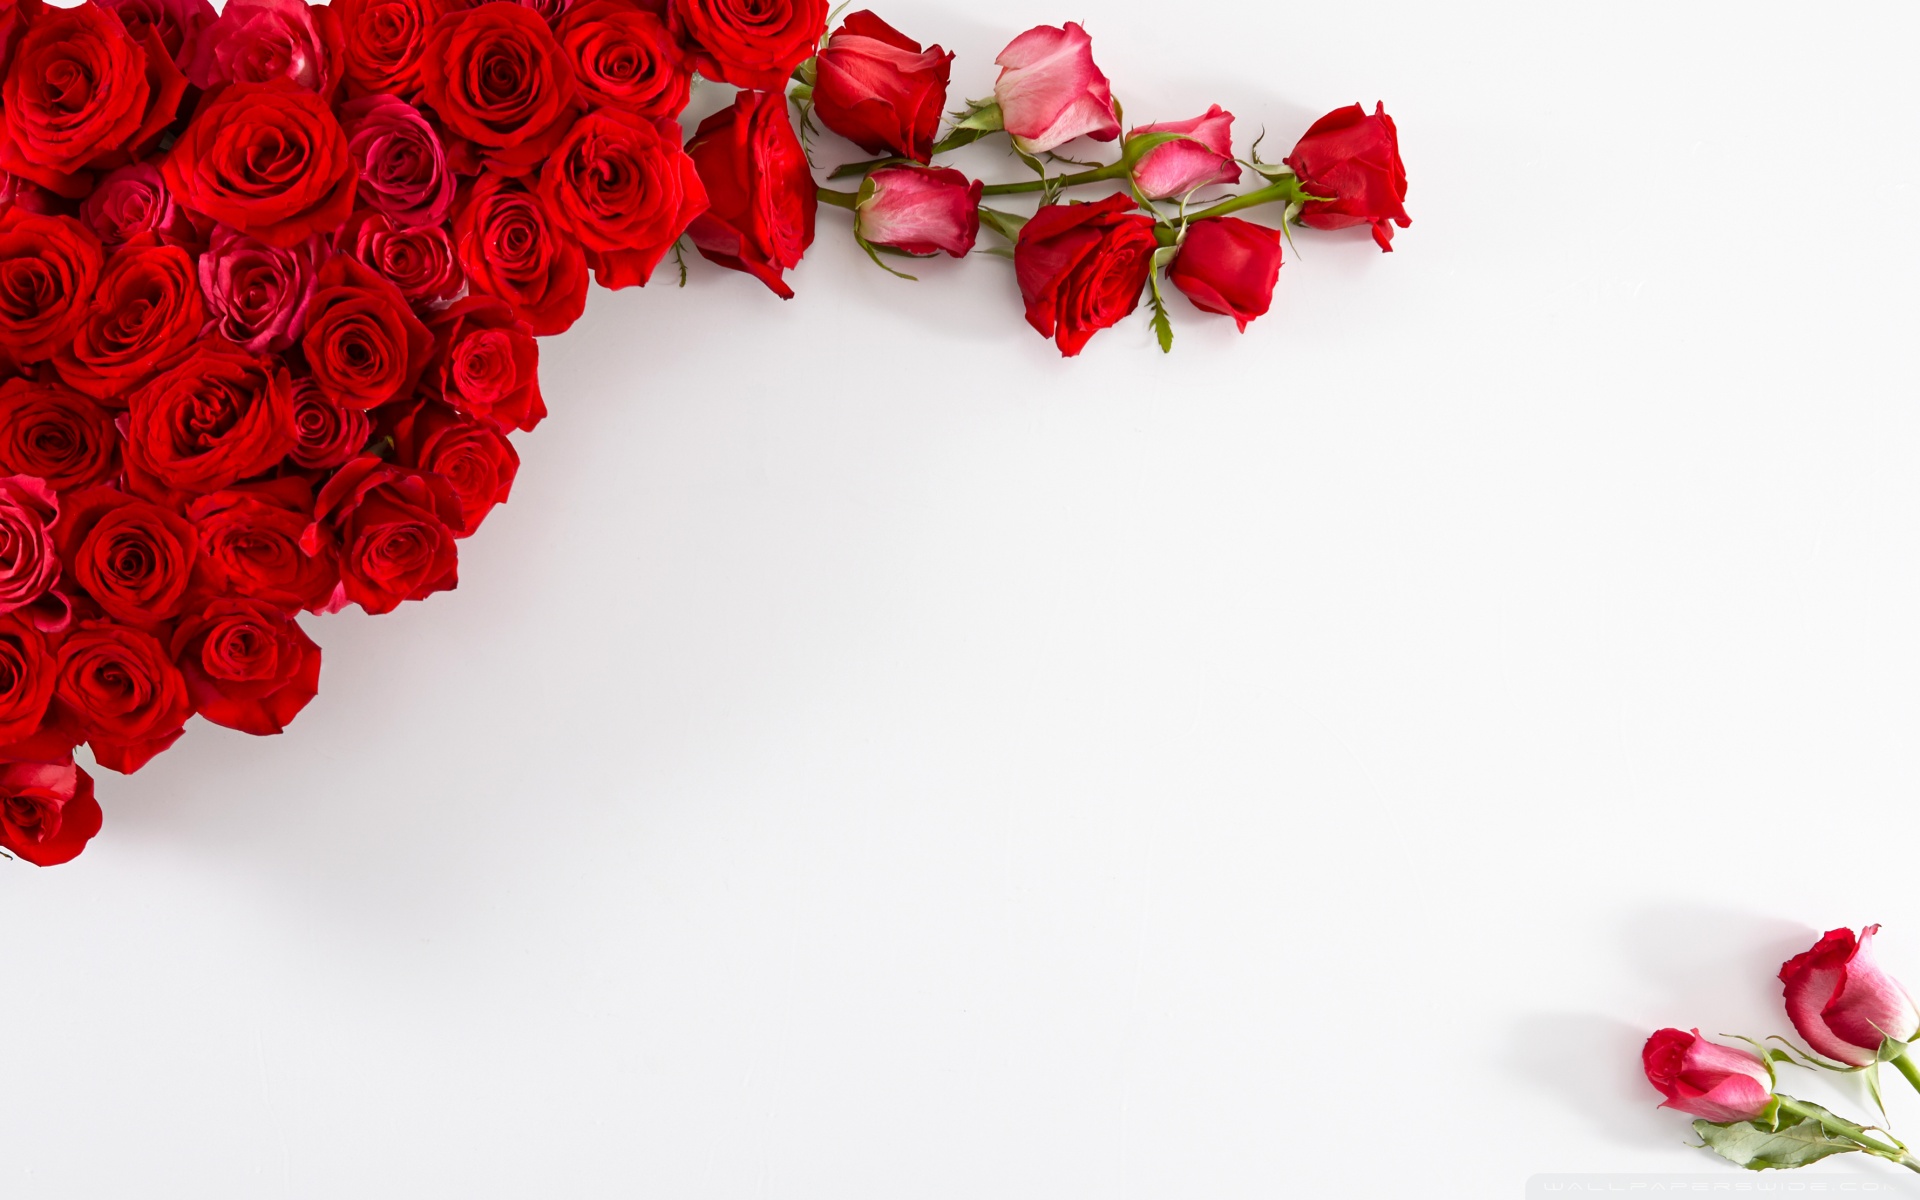 Red Roses On White Background 4K HD Desktop Wallpaper For